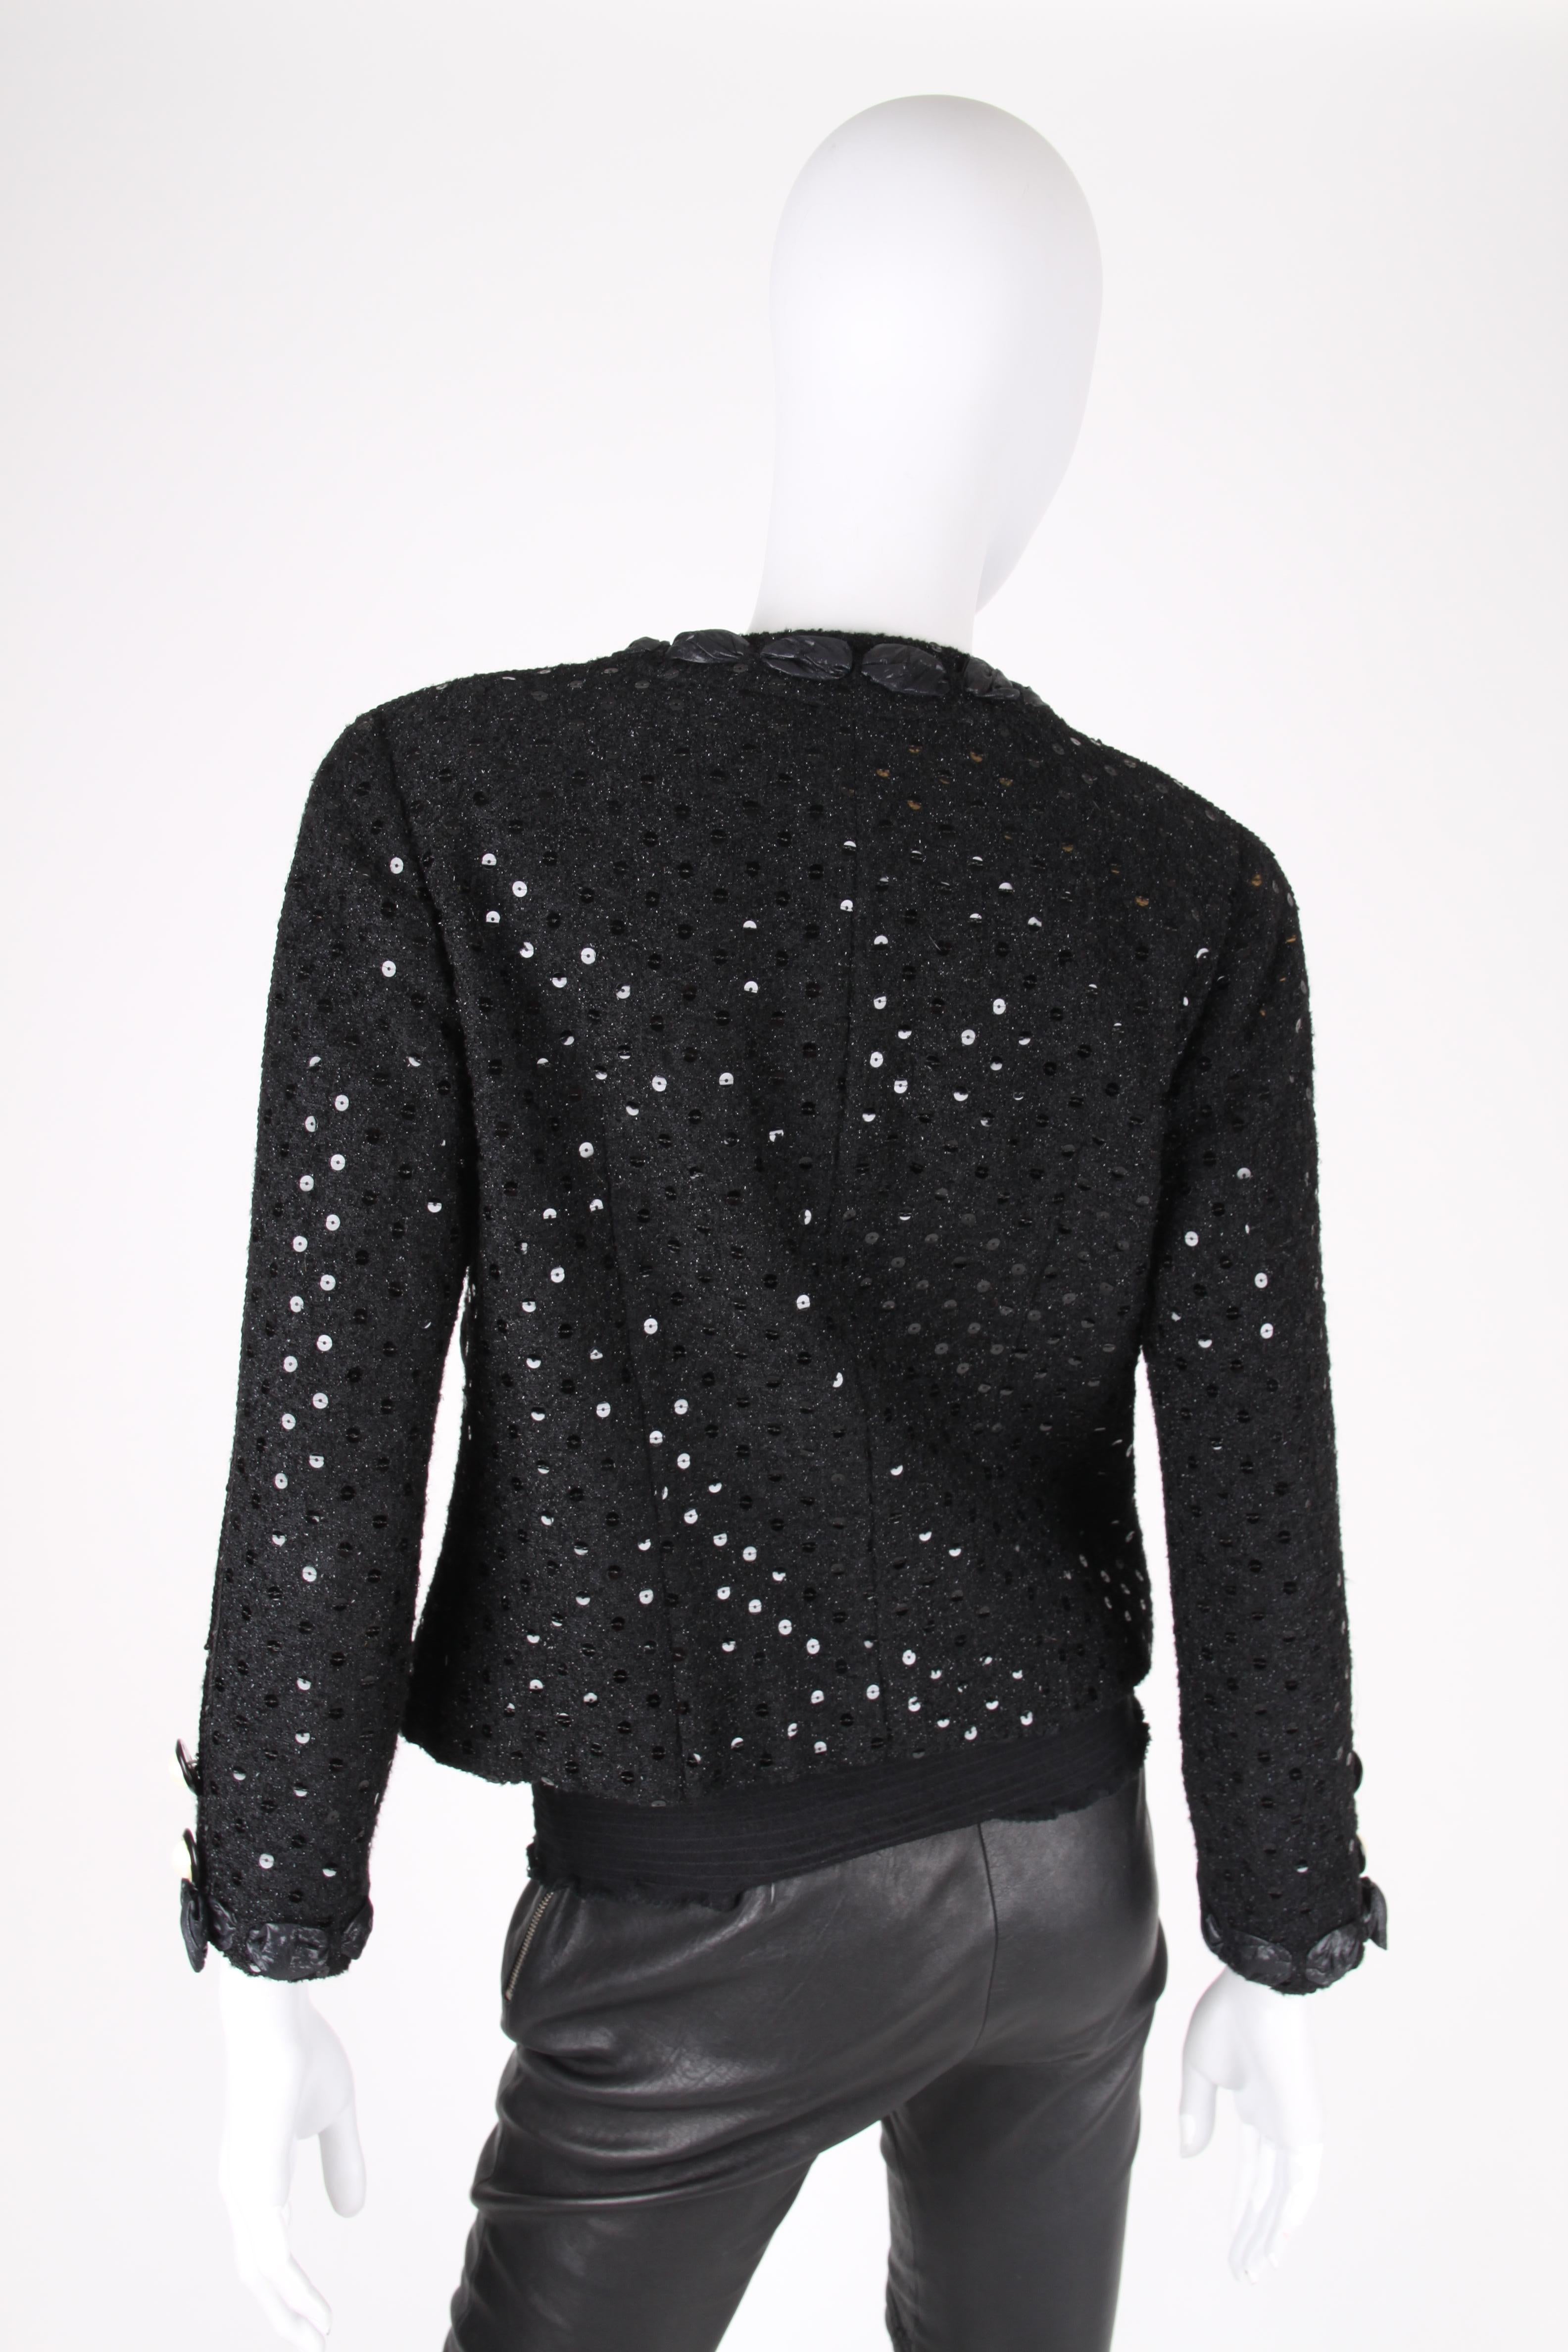 Chanel 2-pcs Sequin Suit Jacket & Skirt - black 1983 4